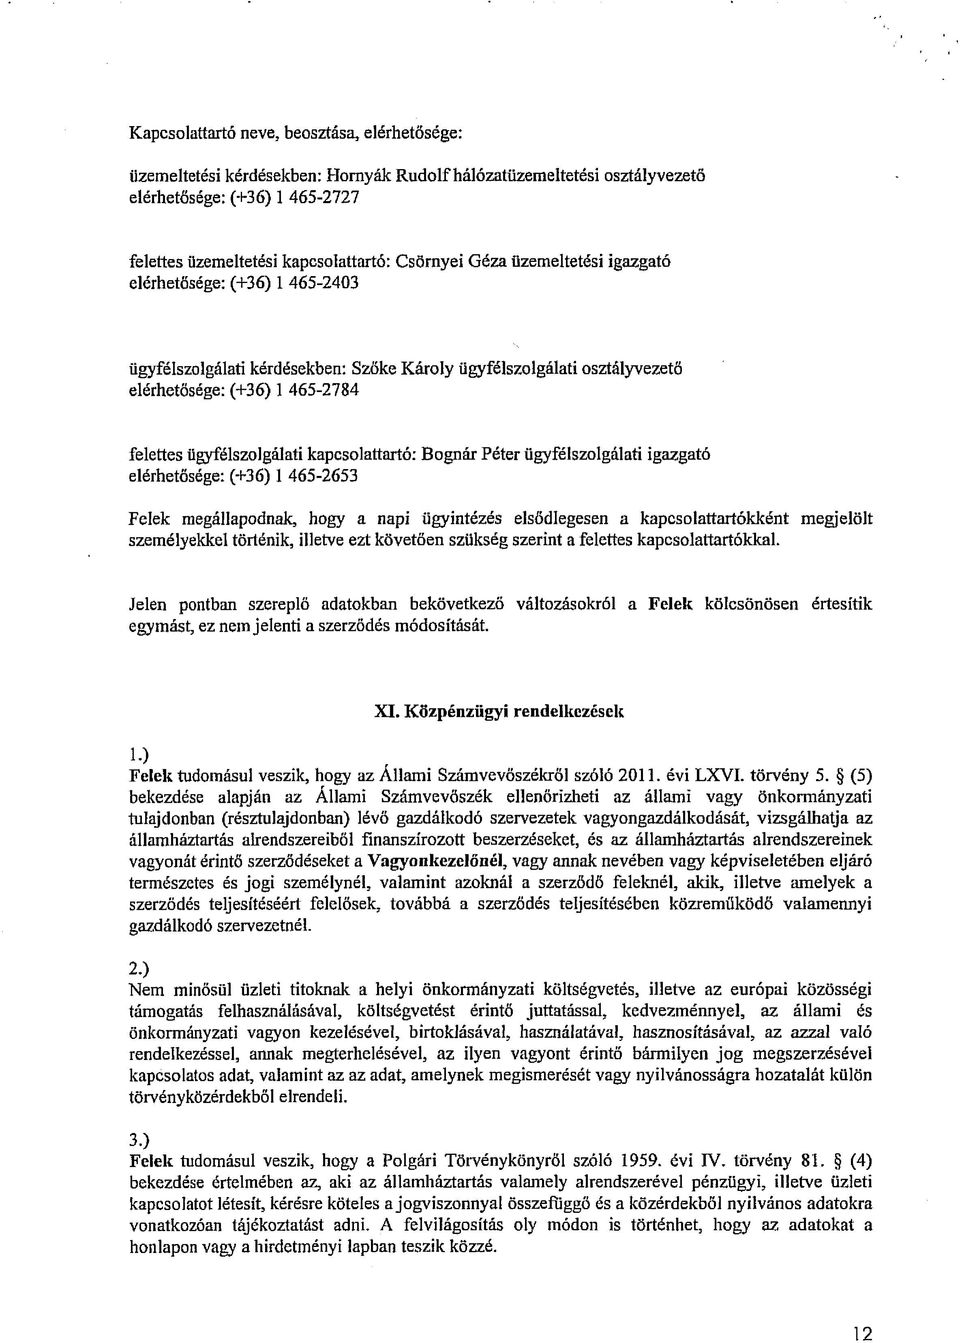 kapcsolattartó: Bognár Péter ügyfélszolgálati igazgató elérhetősége: (+36) 1 465-2653 Felek megállapodnak, hogy a napi ügyintézés elsődlegesen a kapcsolattartókként megjelölt személyekkel történik,